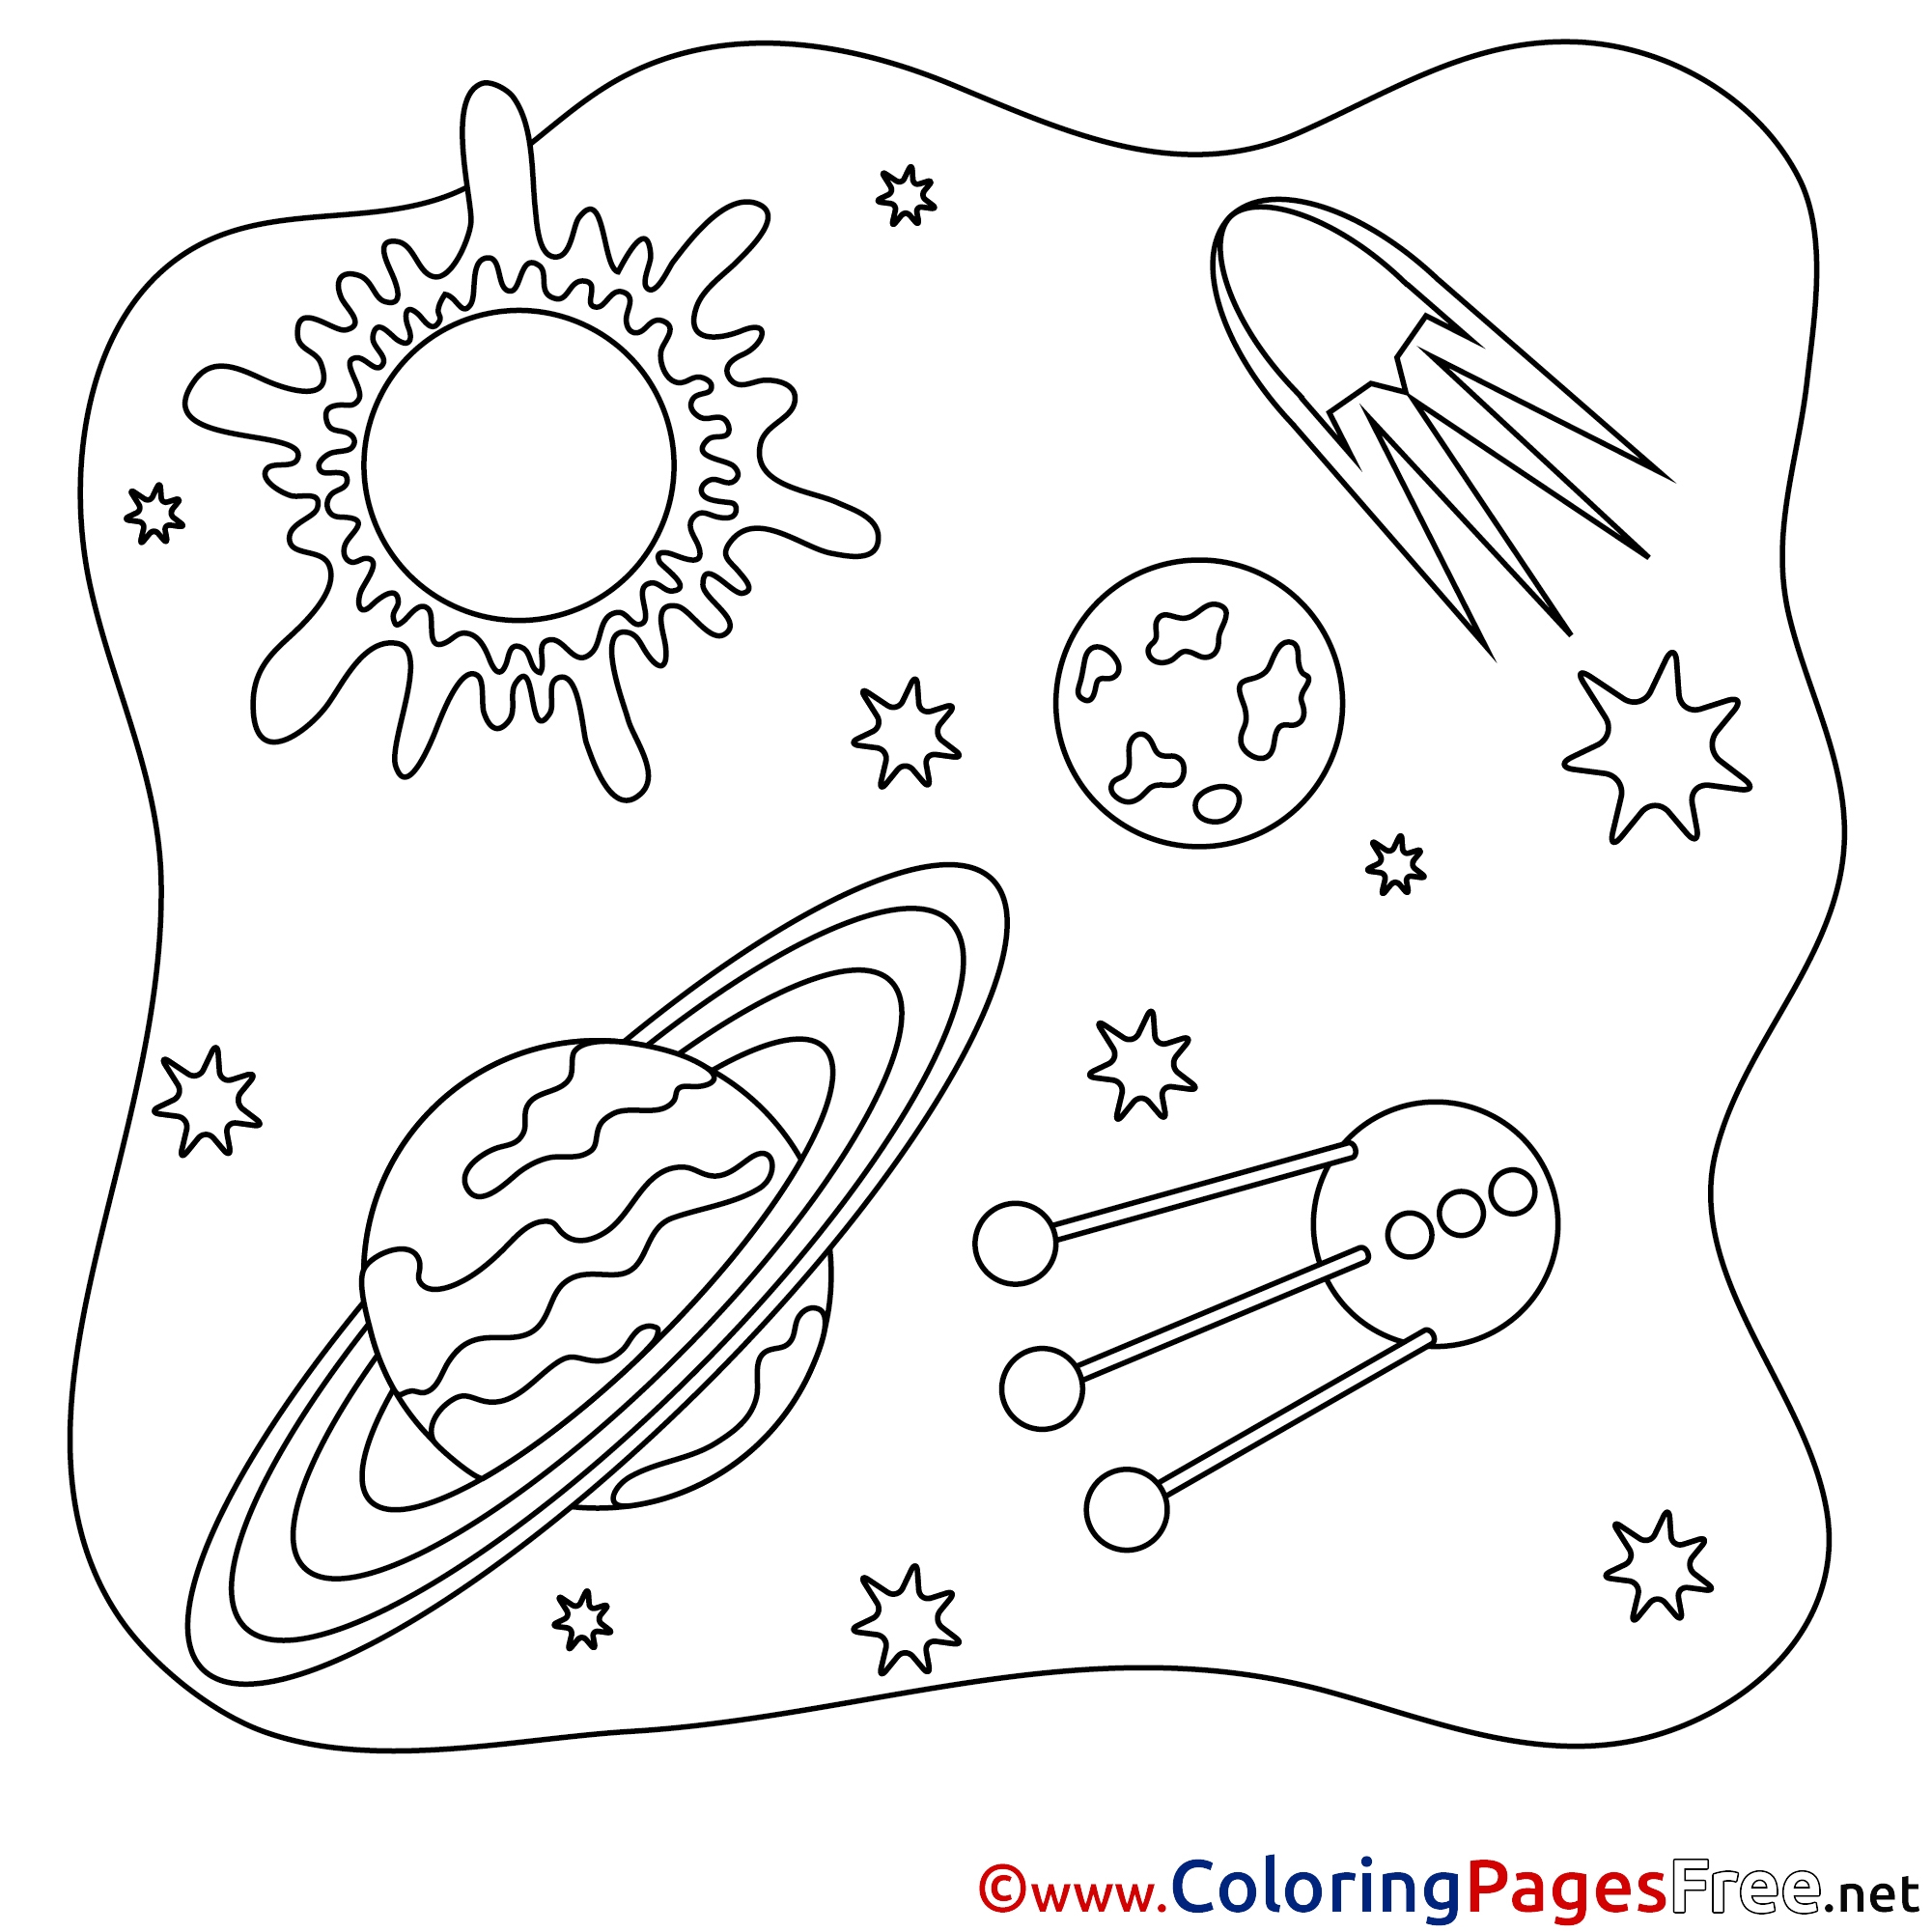 Раскраска планеты для детей 3 4 лет. Космос раскраска для детей. Раскраска космос и планеты. Раскраска космос и планеты для детей. Раскраски космос для дошкольников.